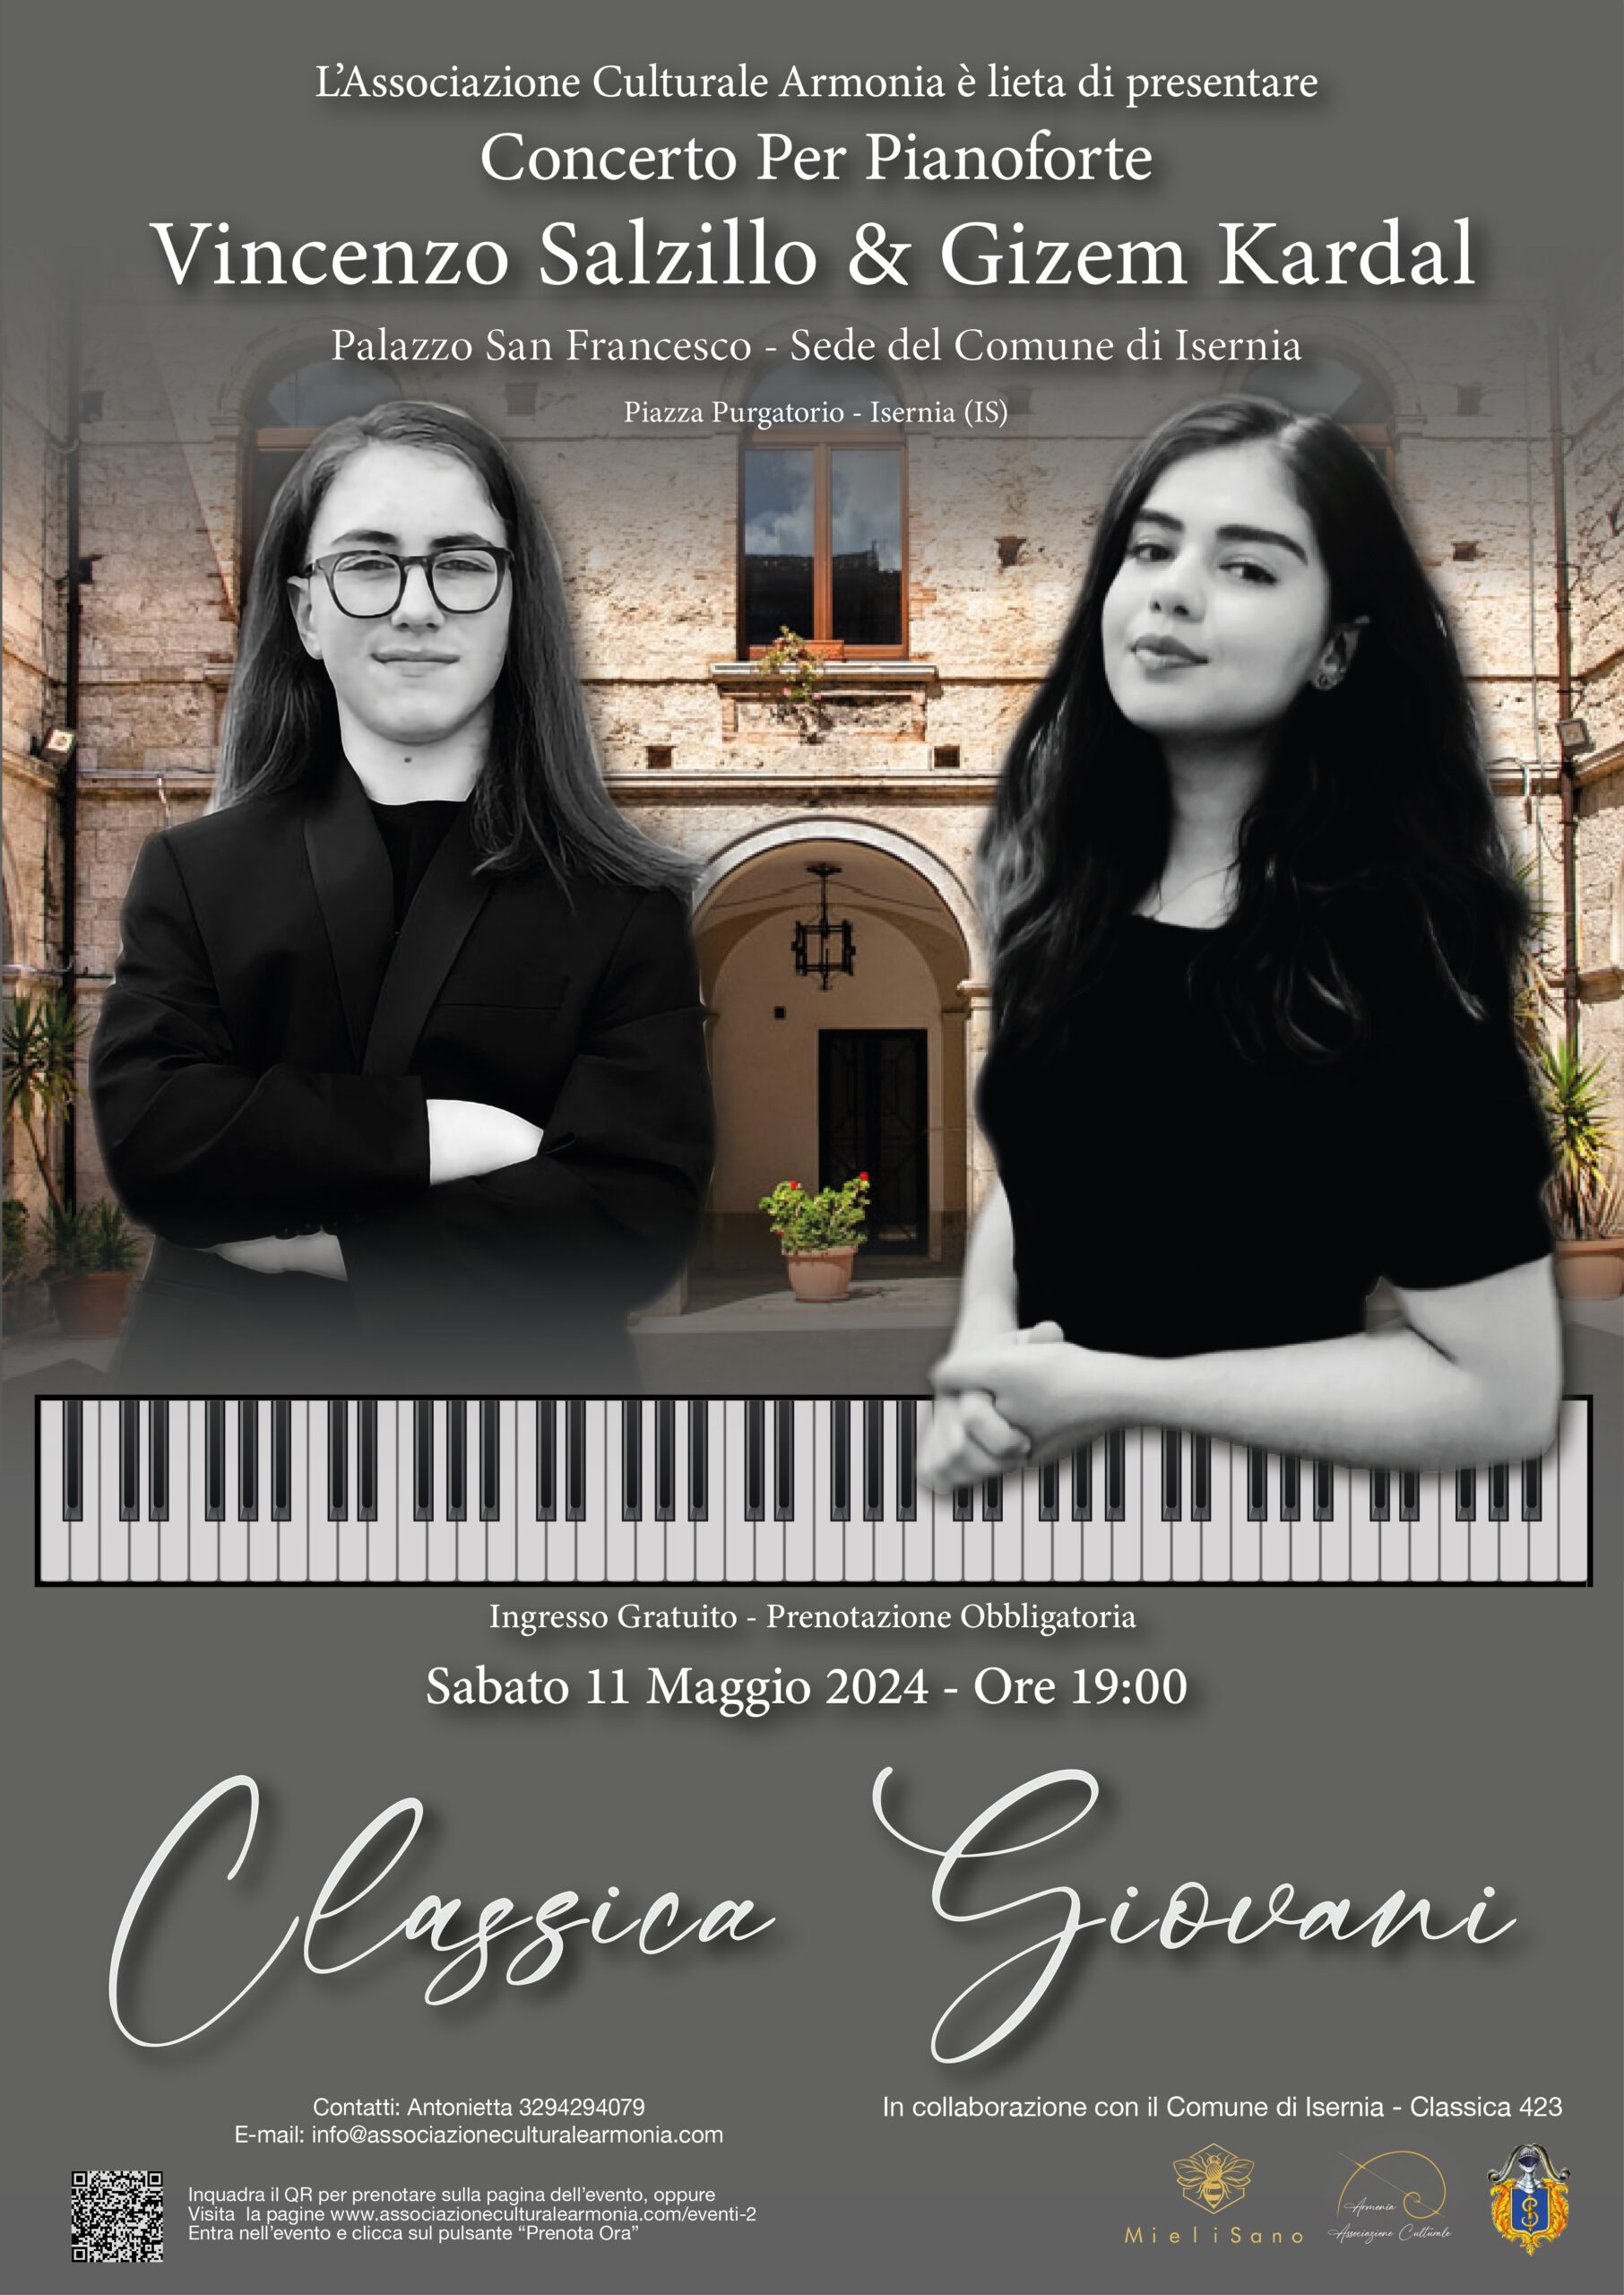 Classica Giovani - Concerto di Musica Classica per Pianoforte